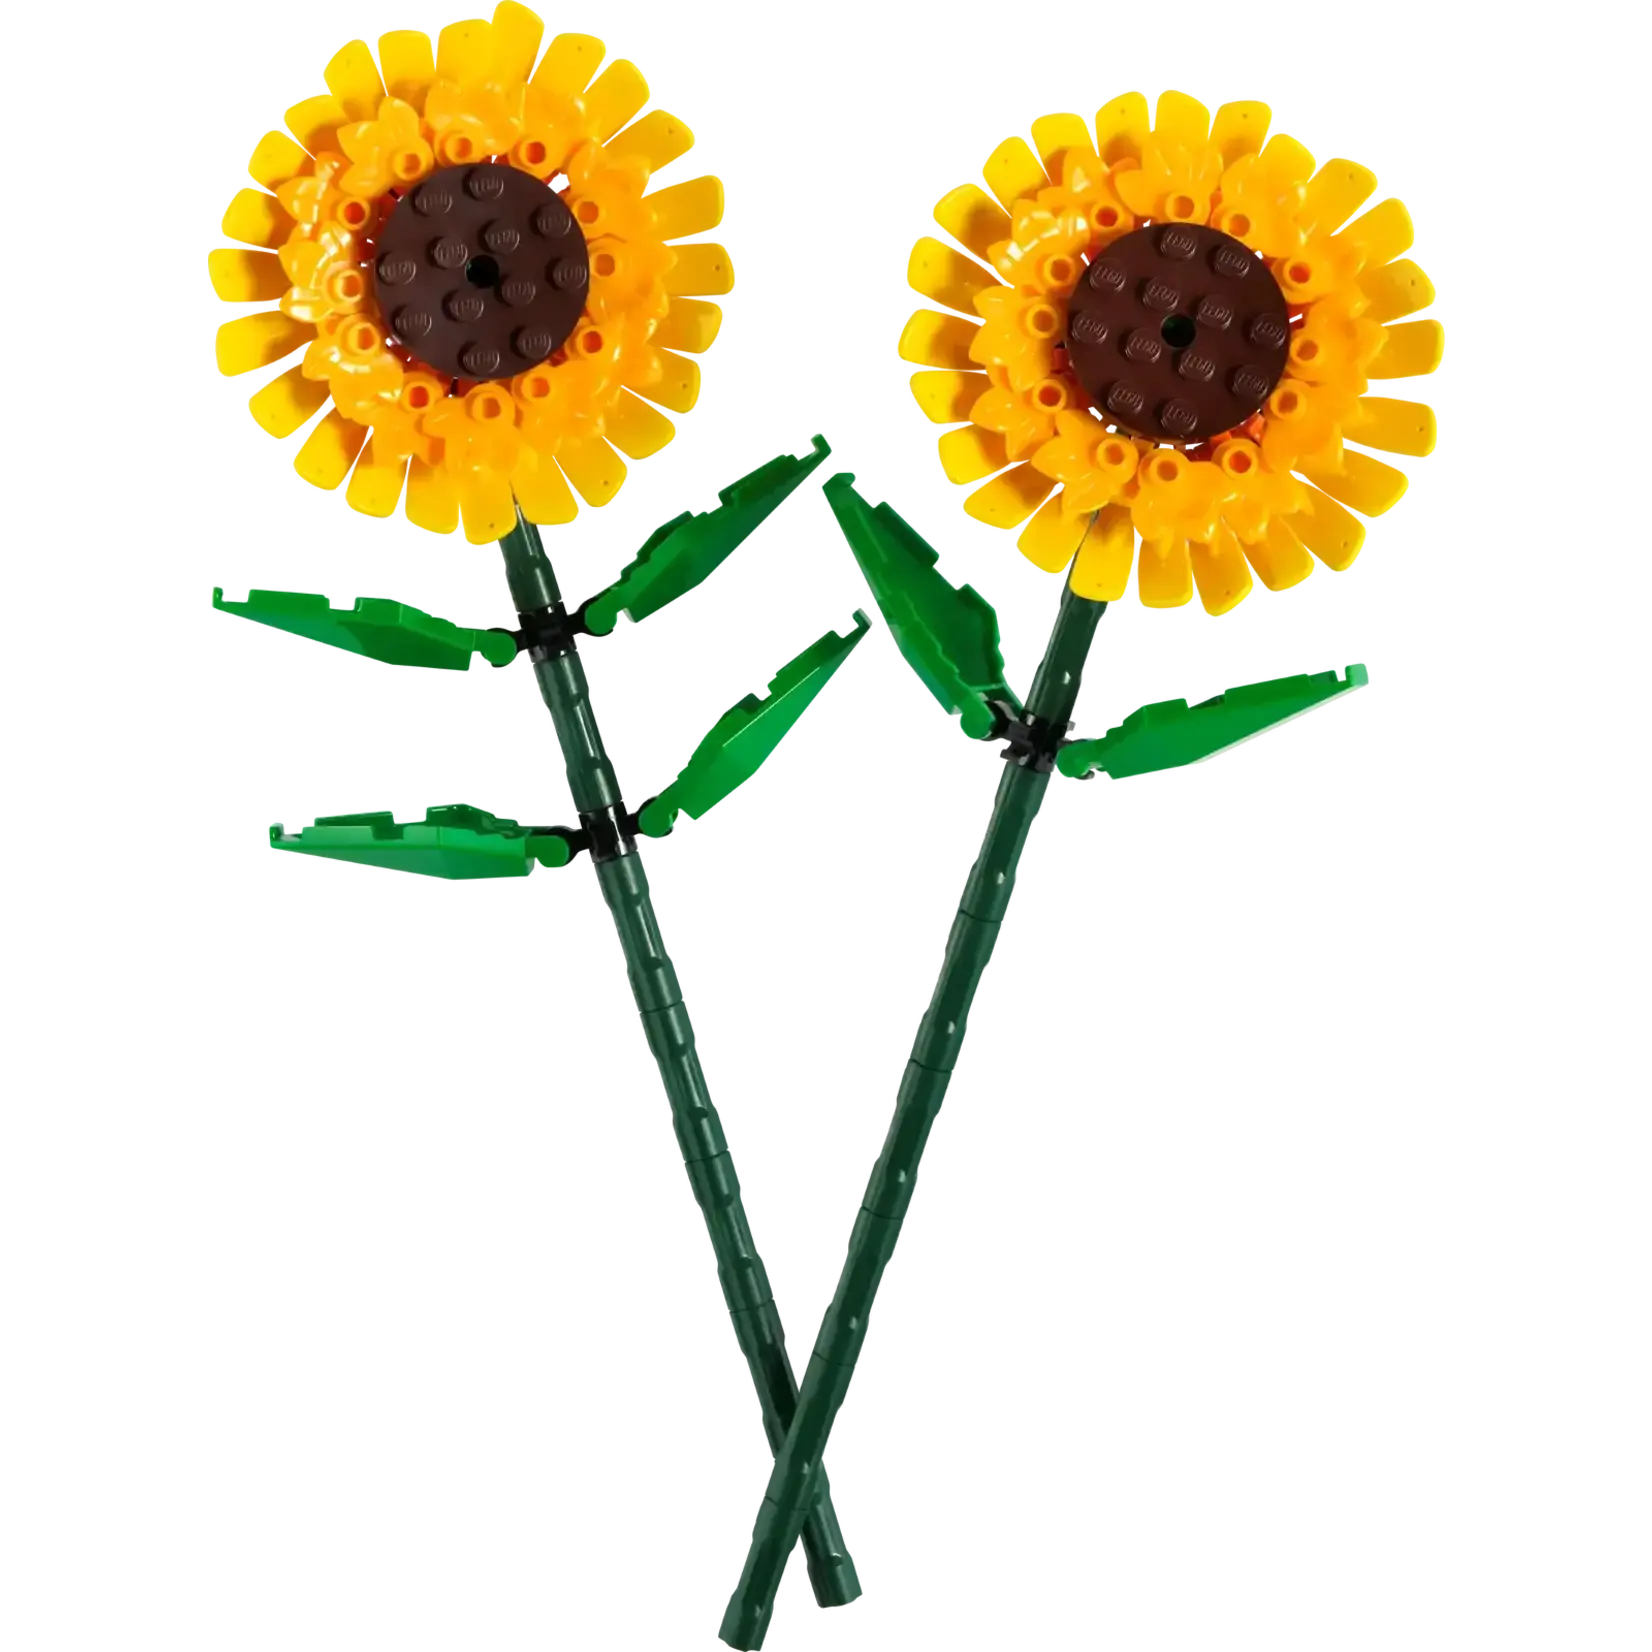 LEGO LEGO Sunflowers (40524)